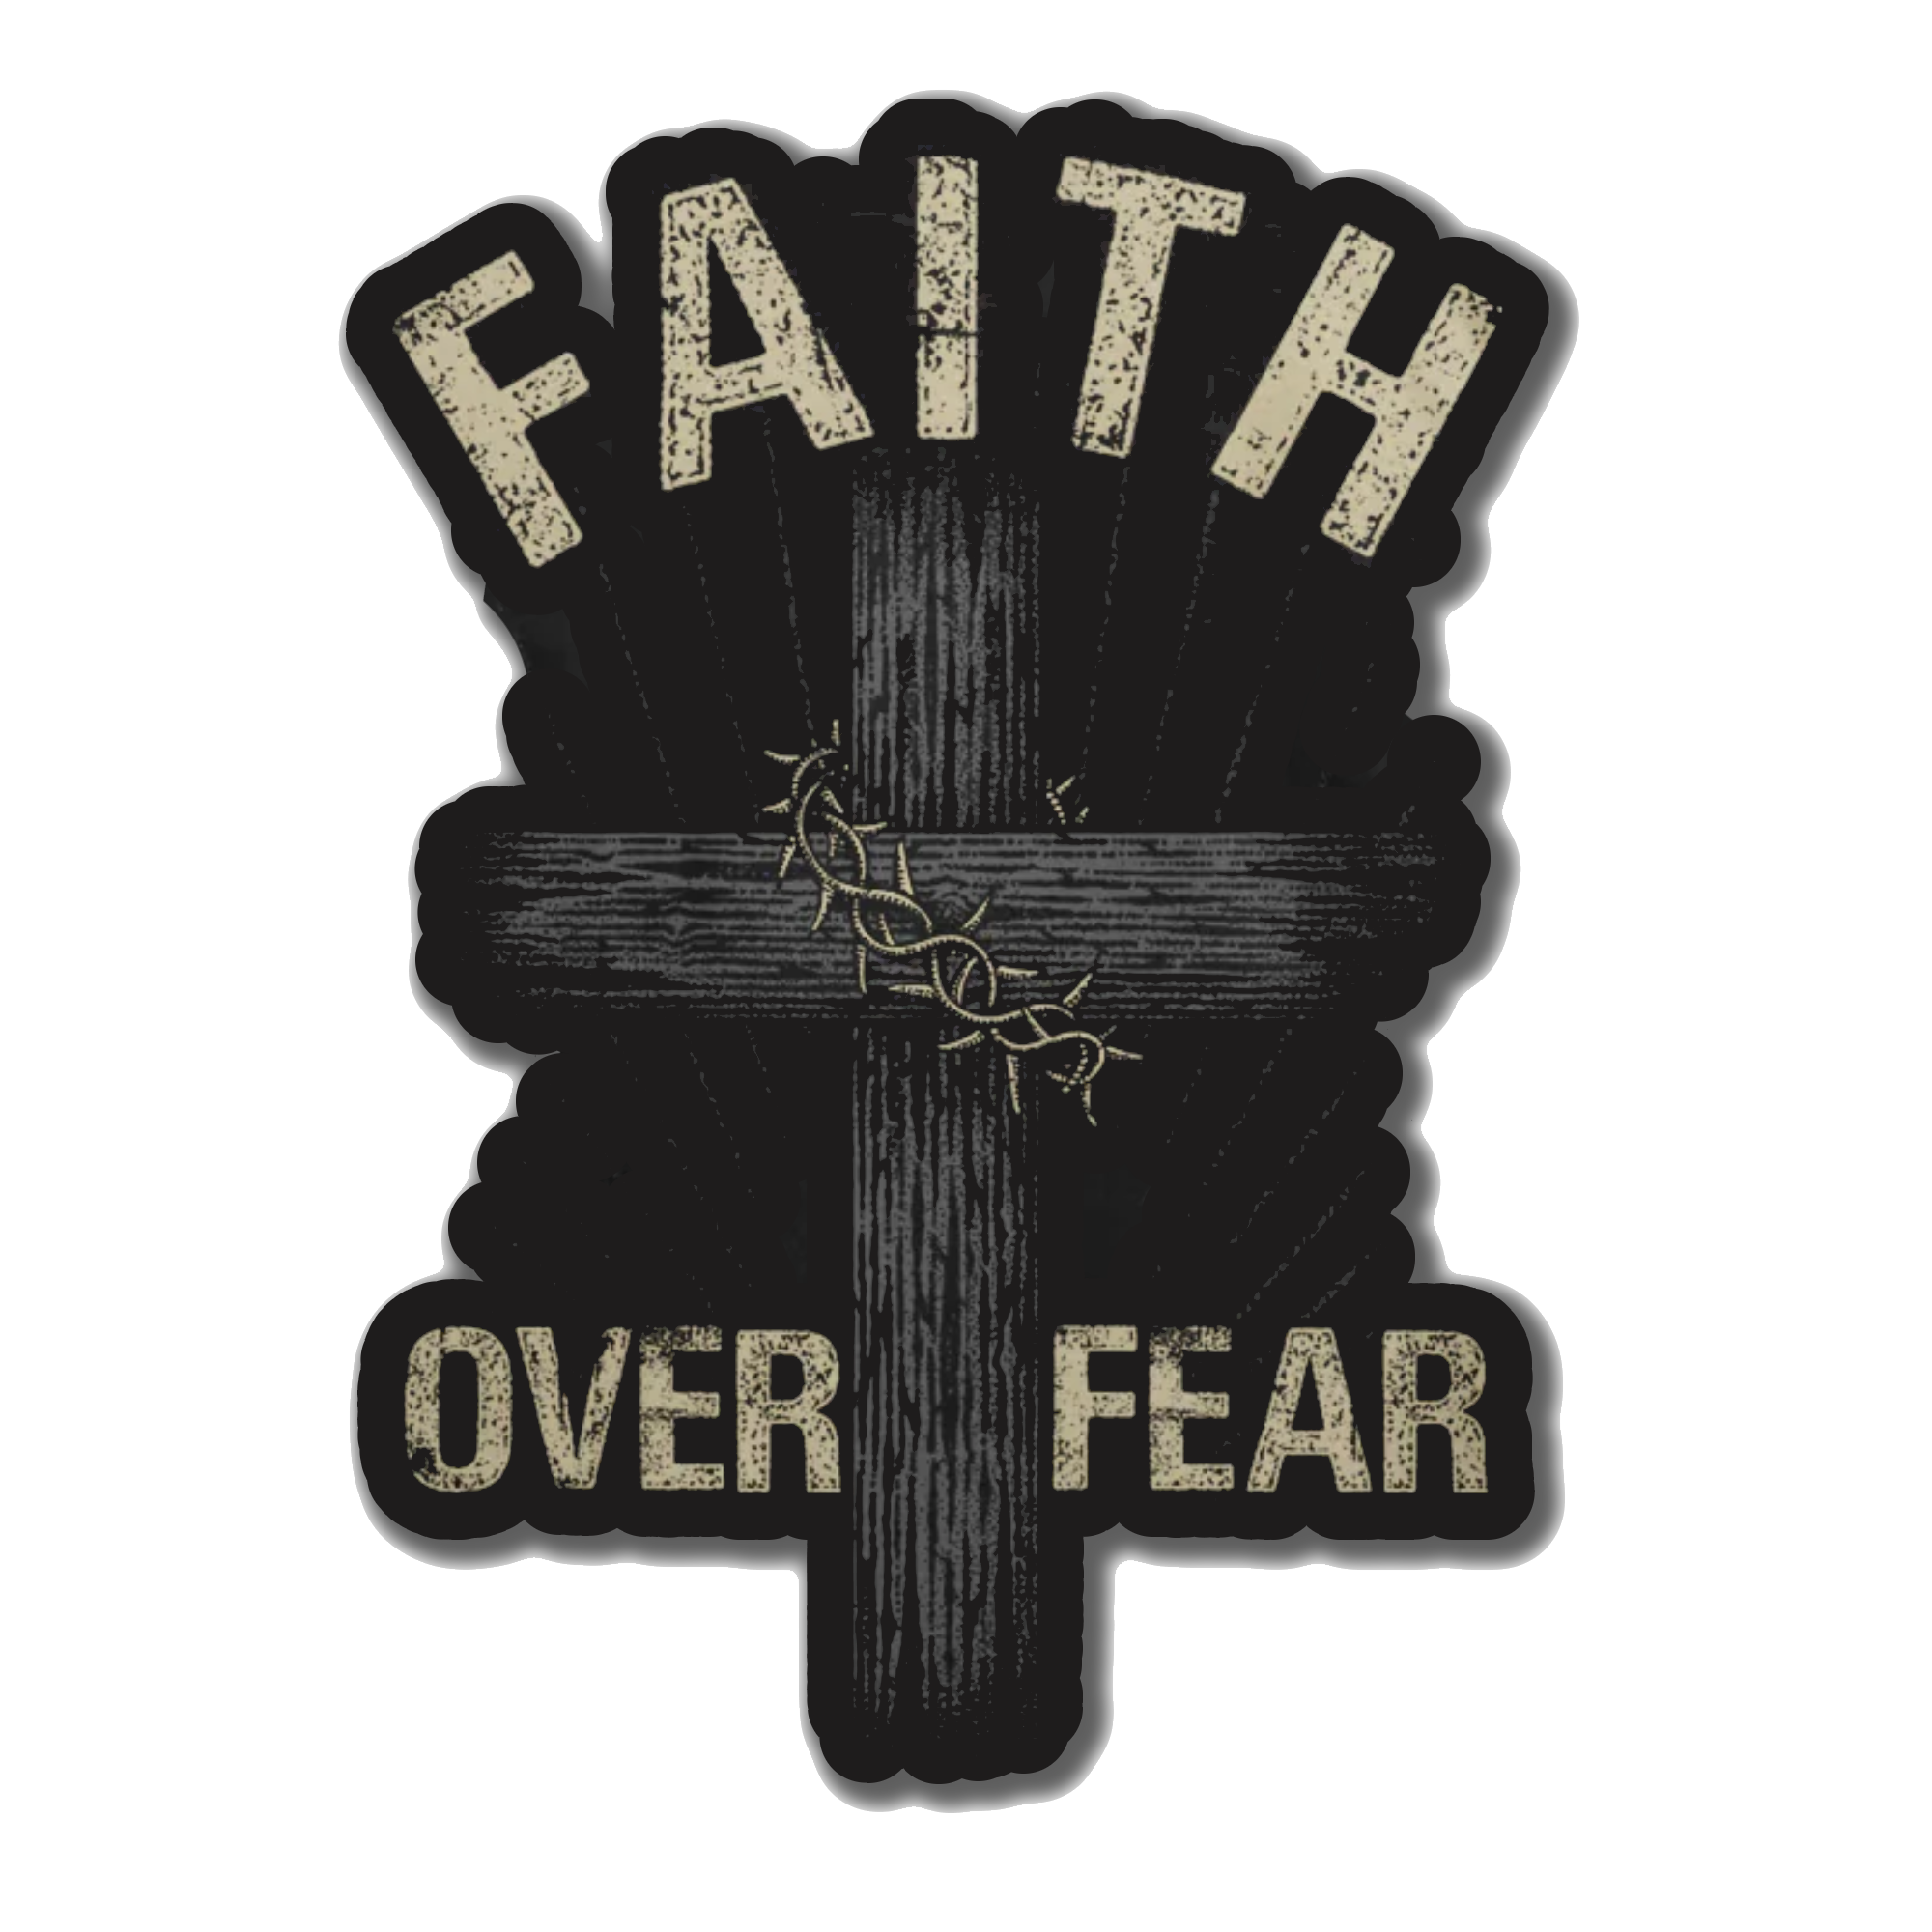 Faith Over Fear Decal